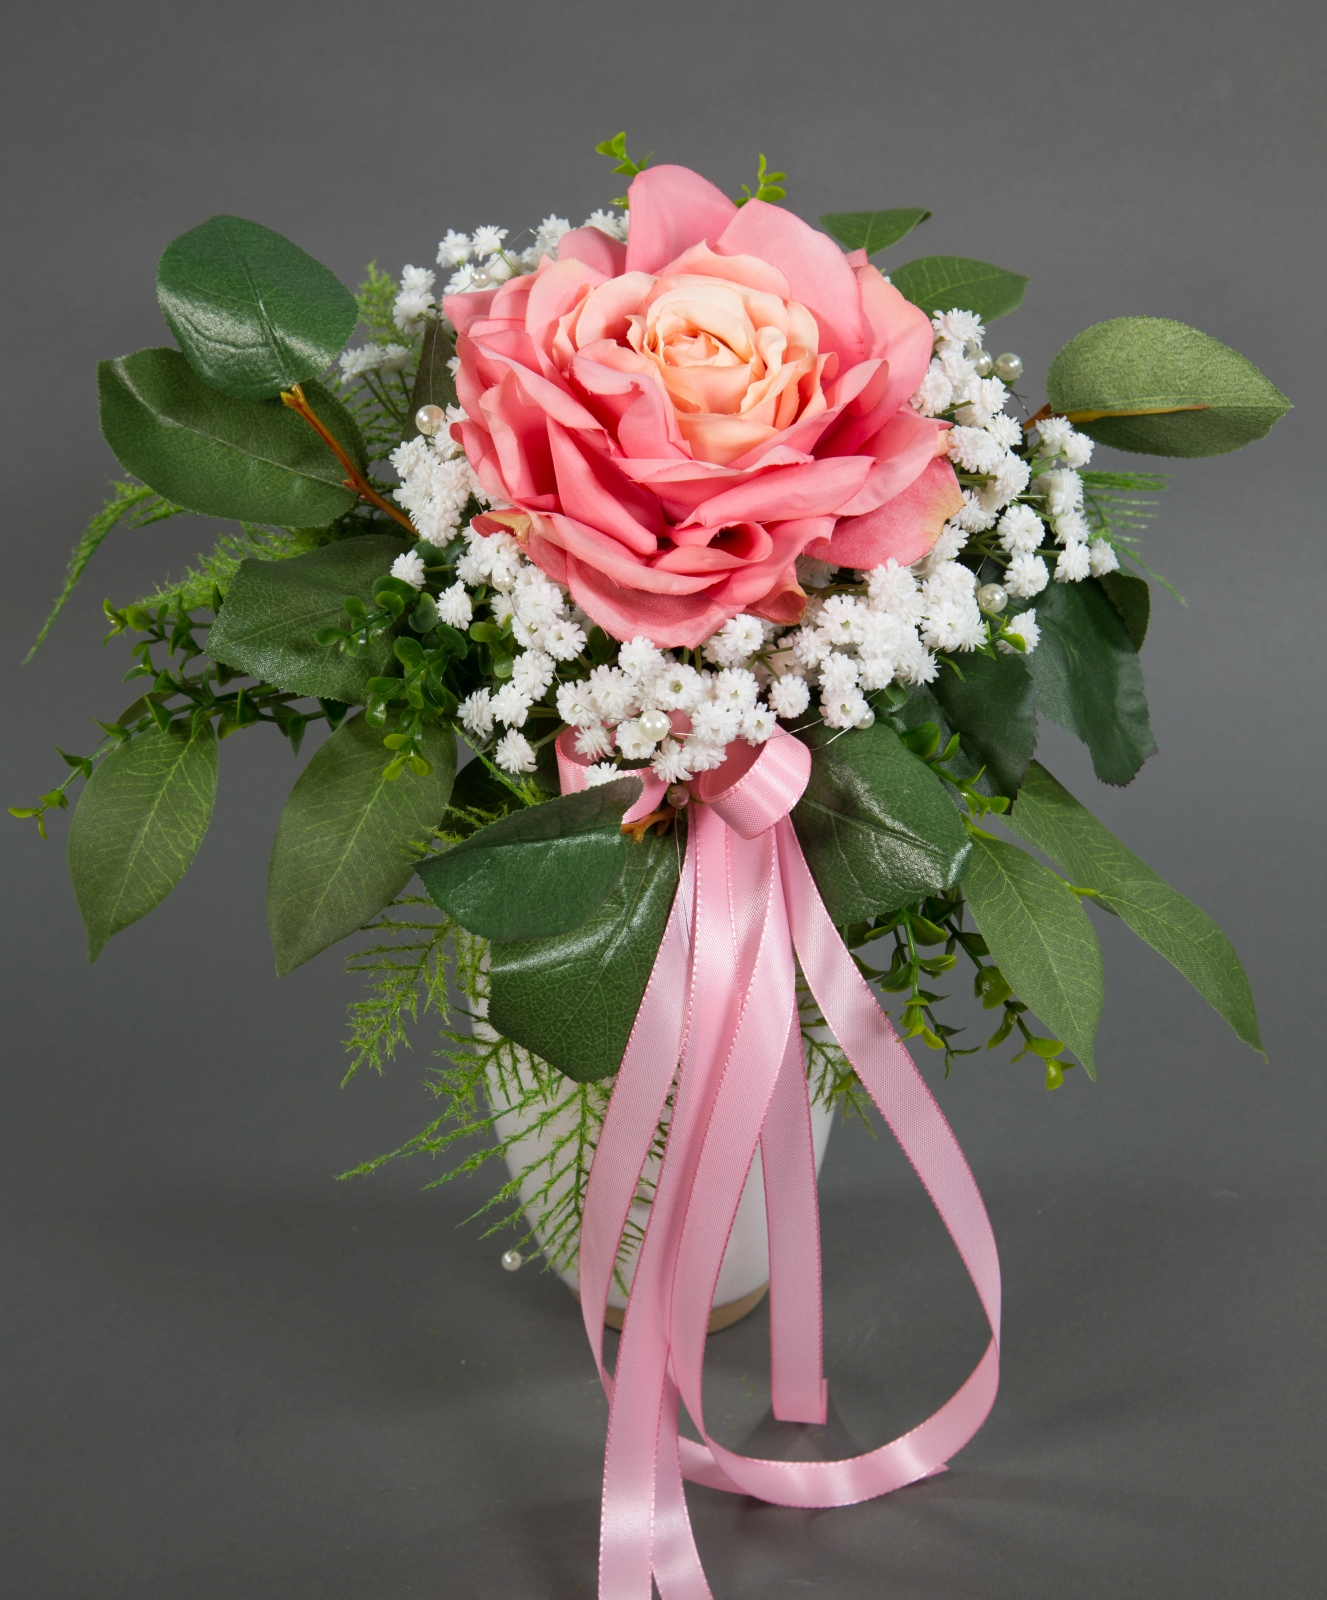 Strauß mit großer Rose 36x25cm rosa Kunstblumen künstlicher Strauß Blumenstrauß Rosenstrauß